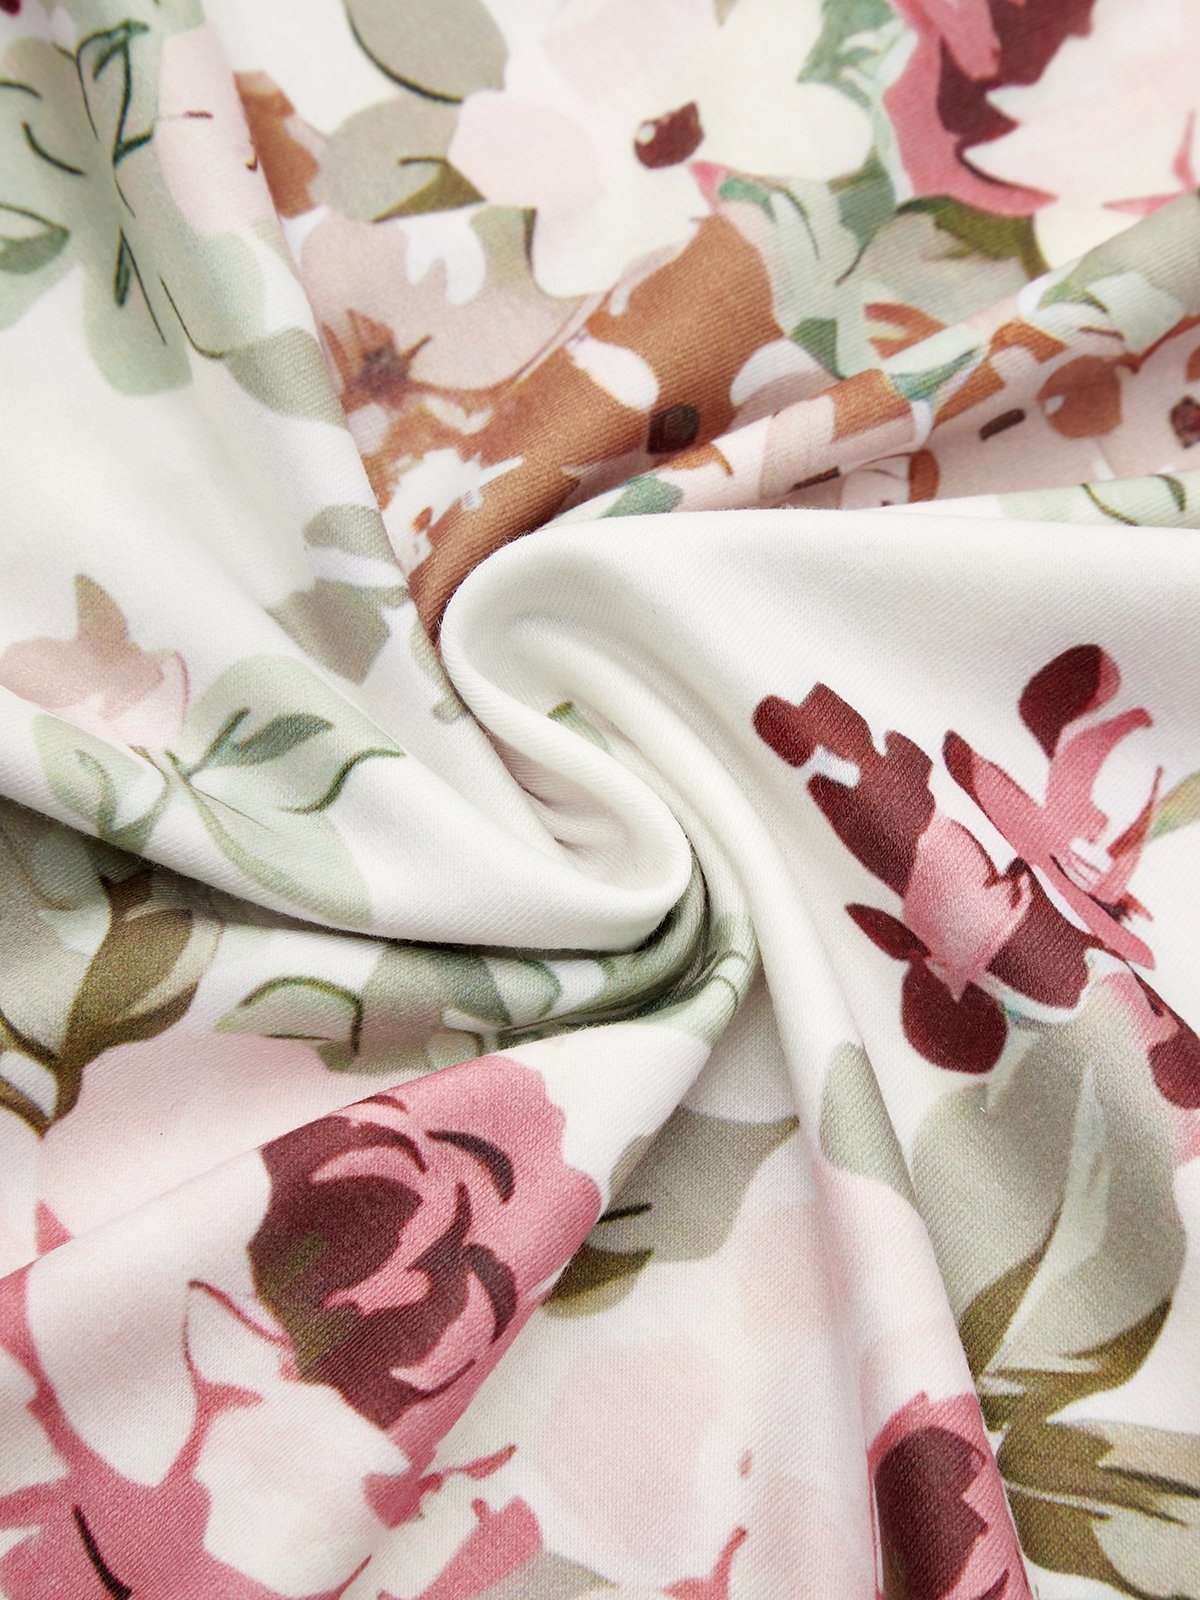 Cotton-Blend Elegant Floral Loose Dress